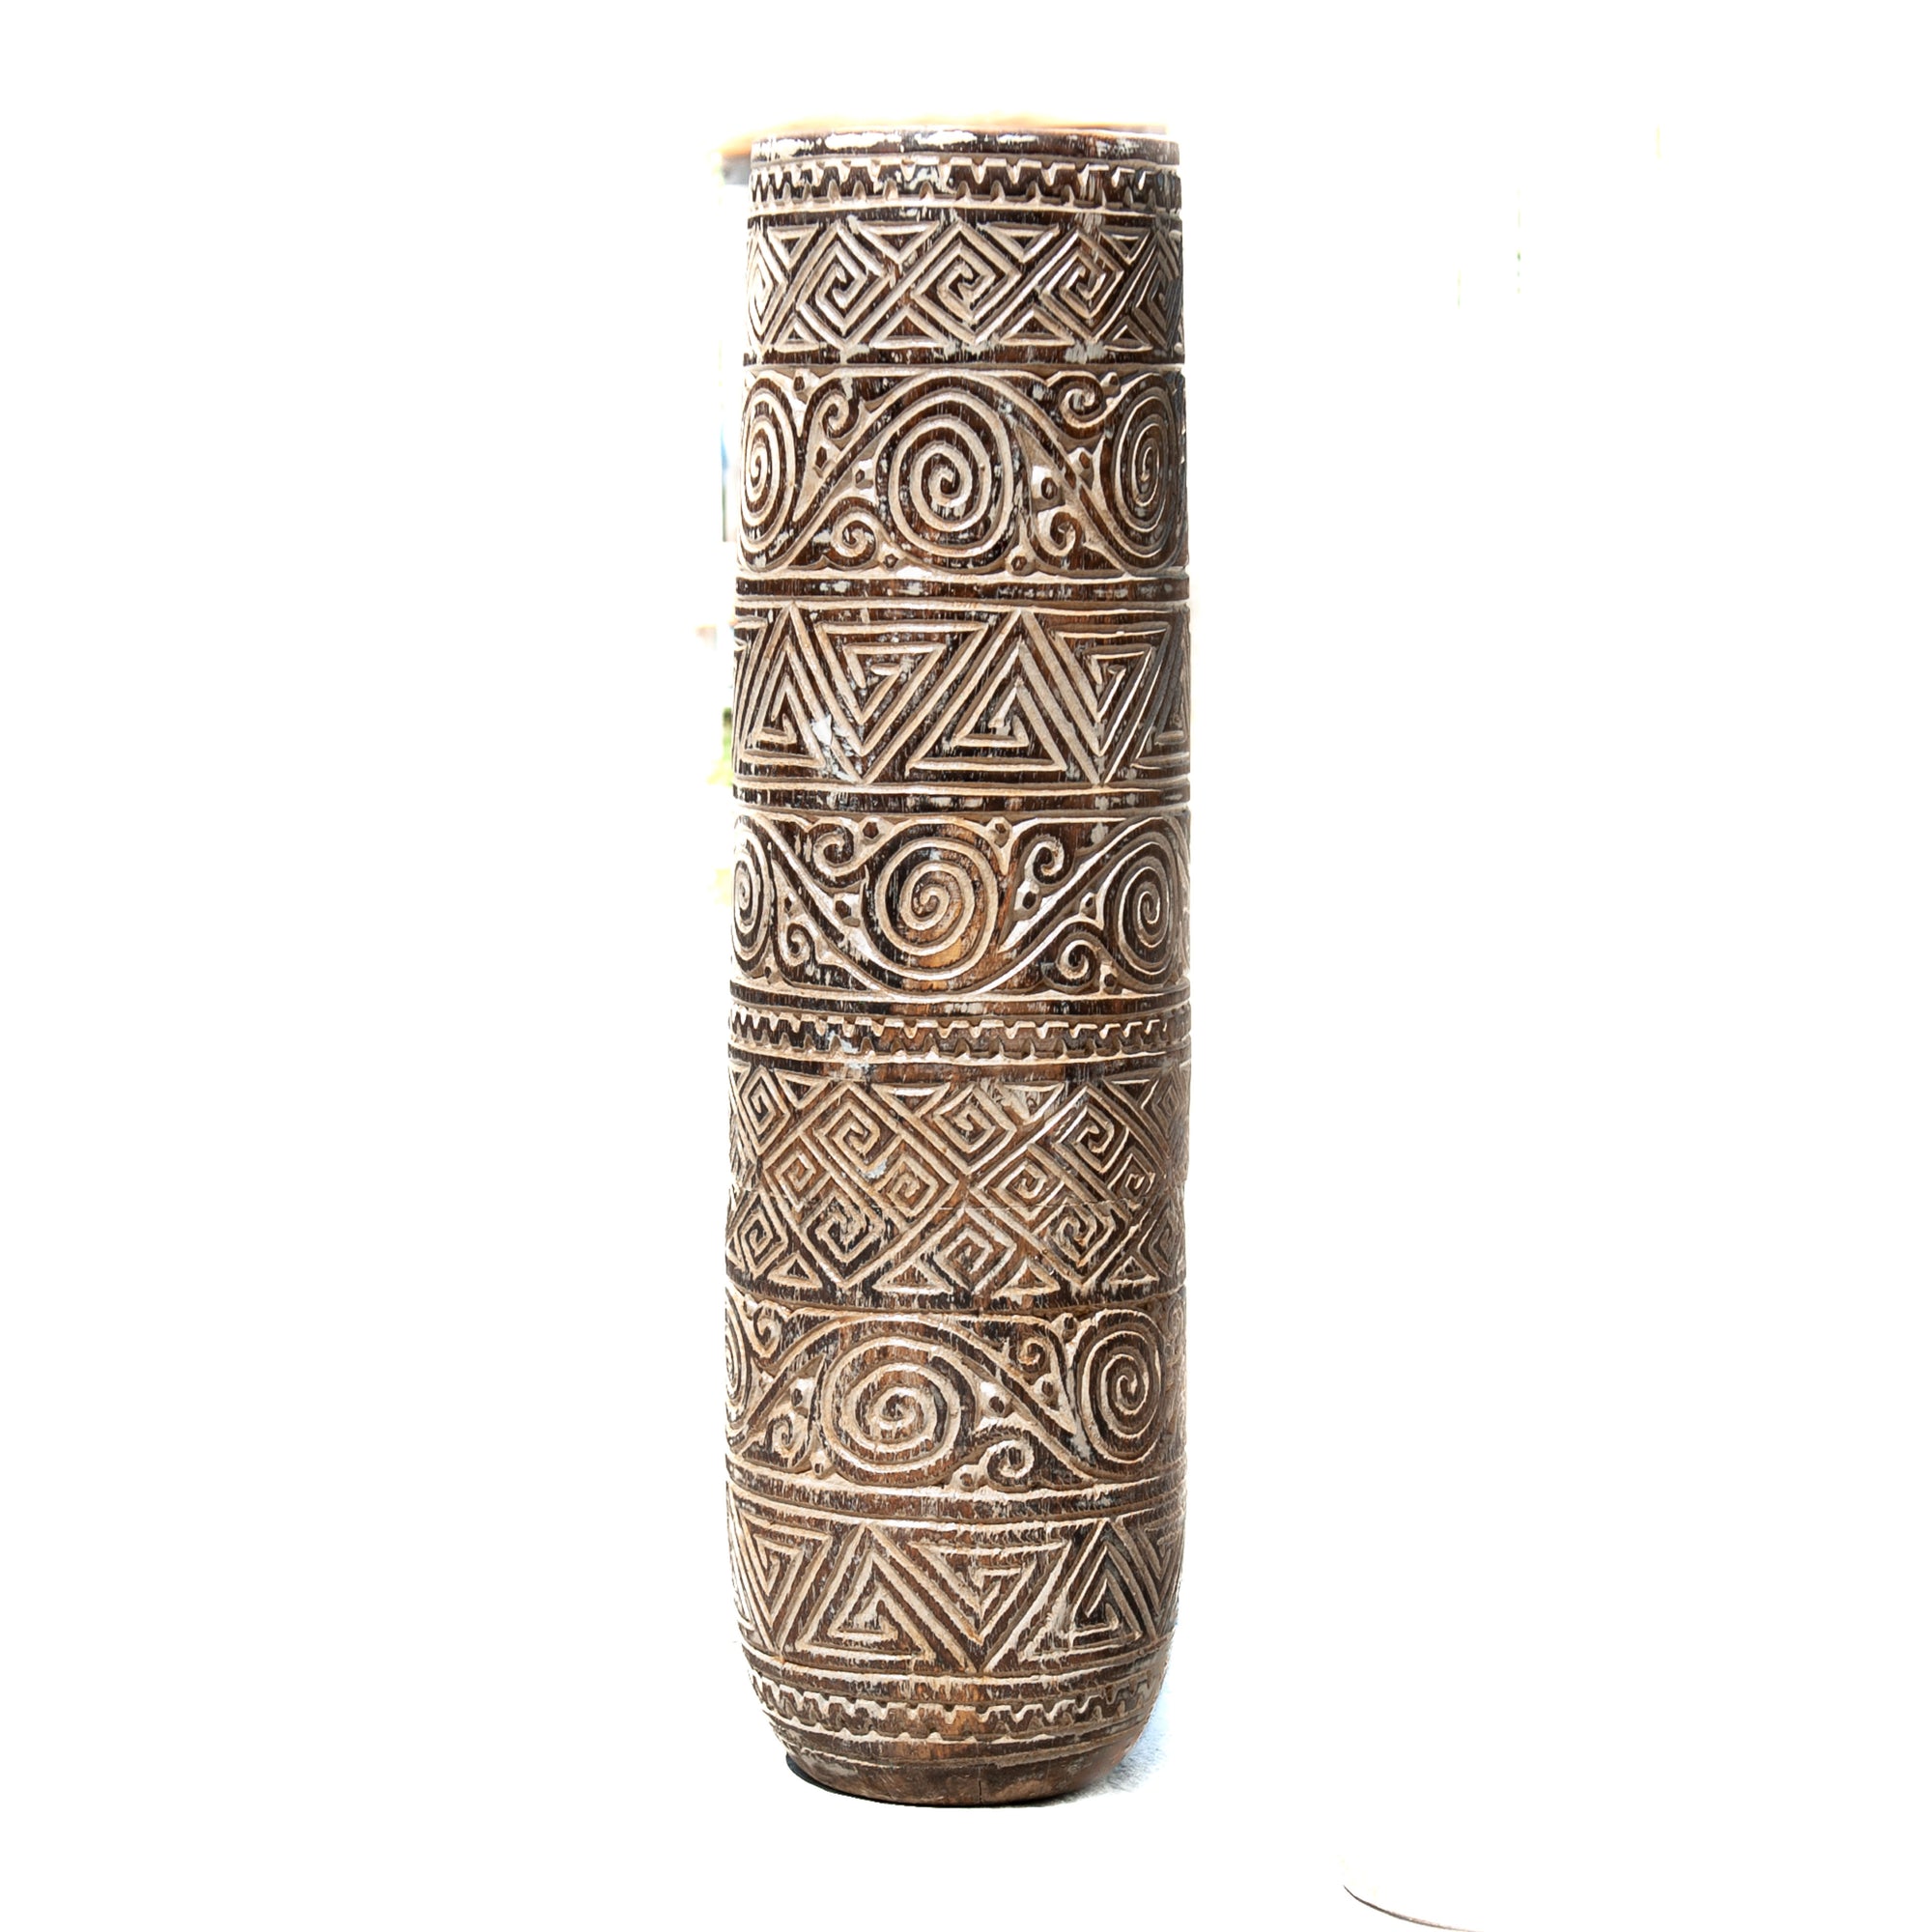 Balinese Suar Wood Carved Vase - Antique Natural Wash